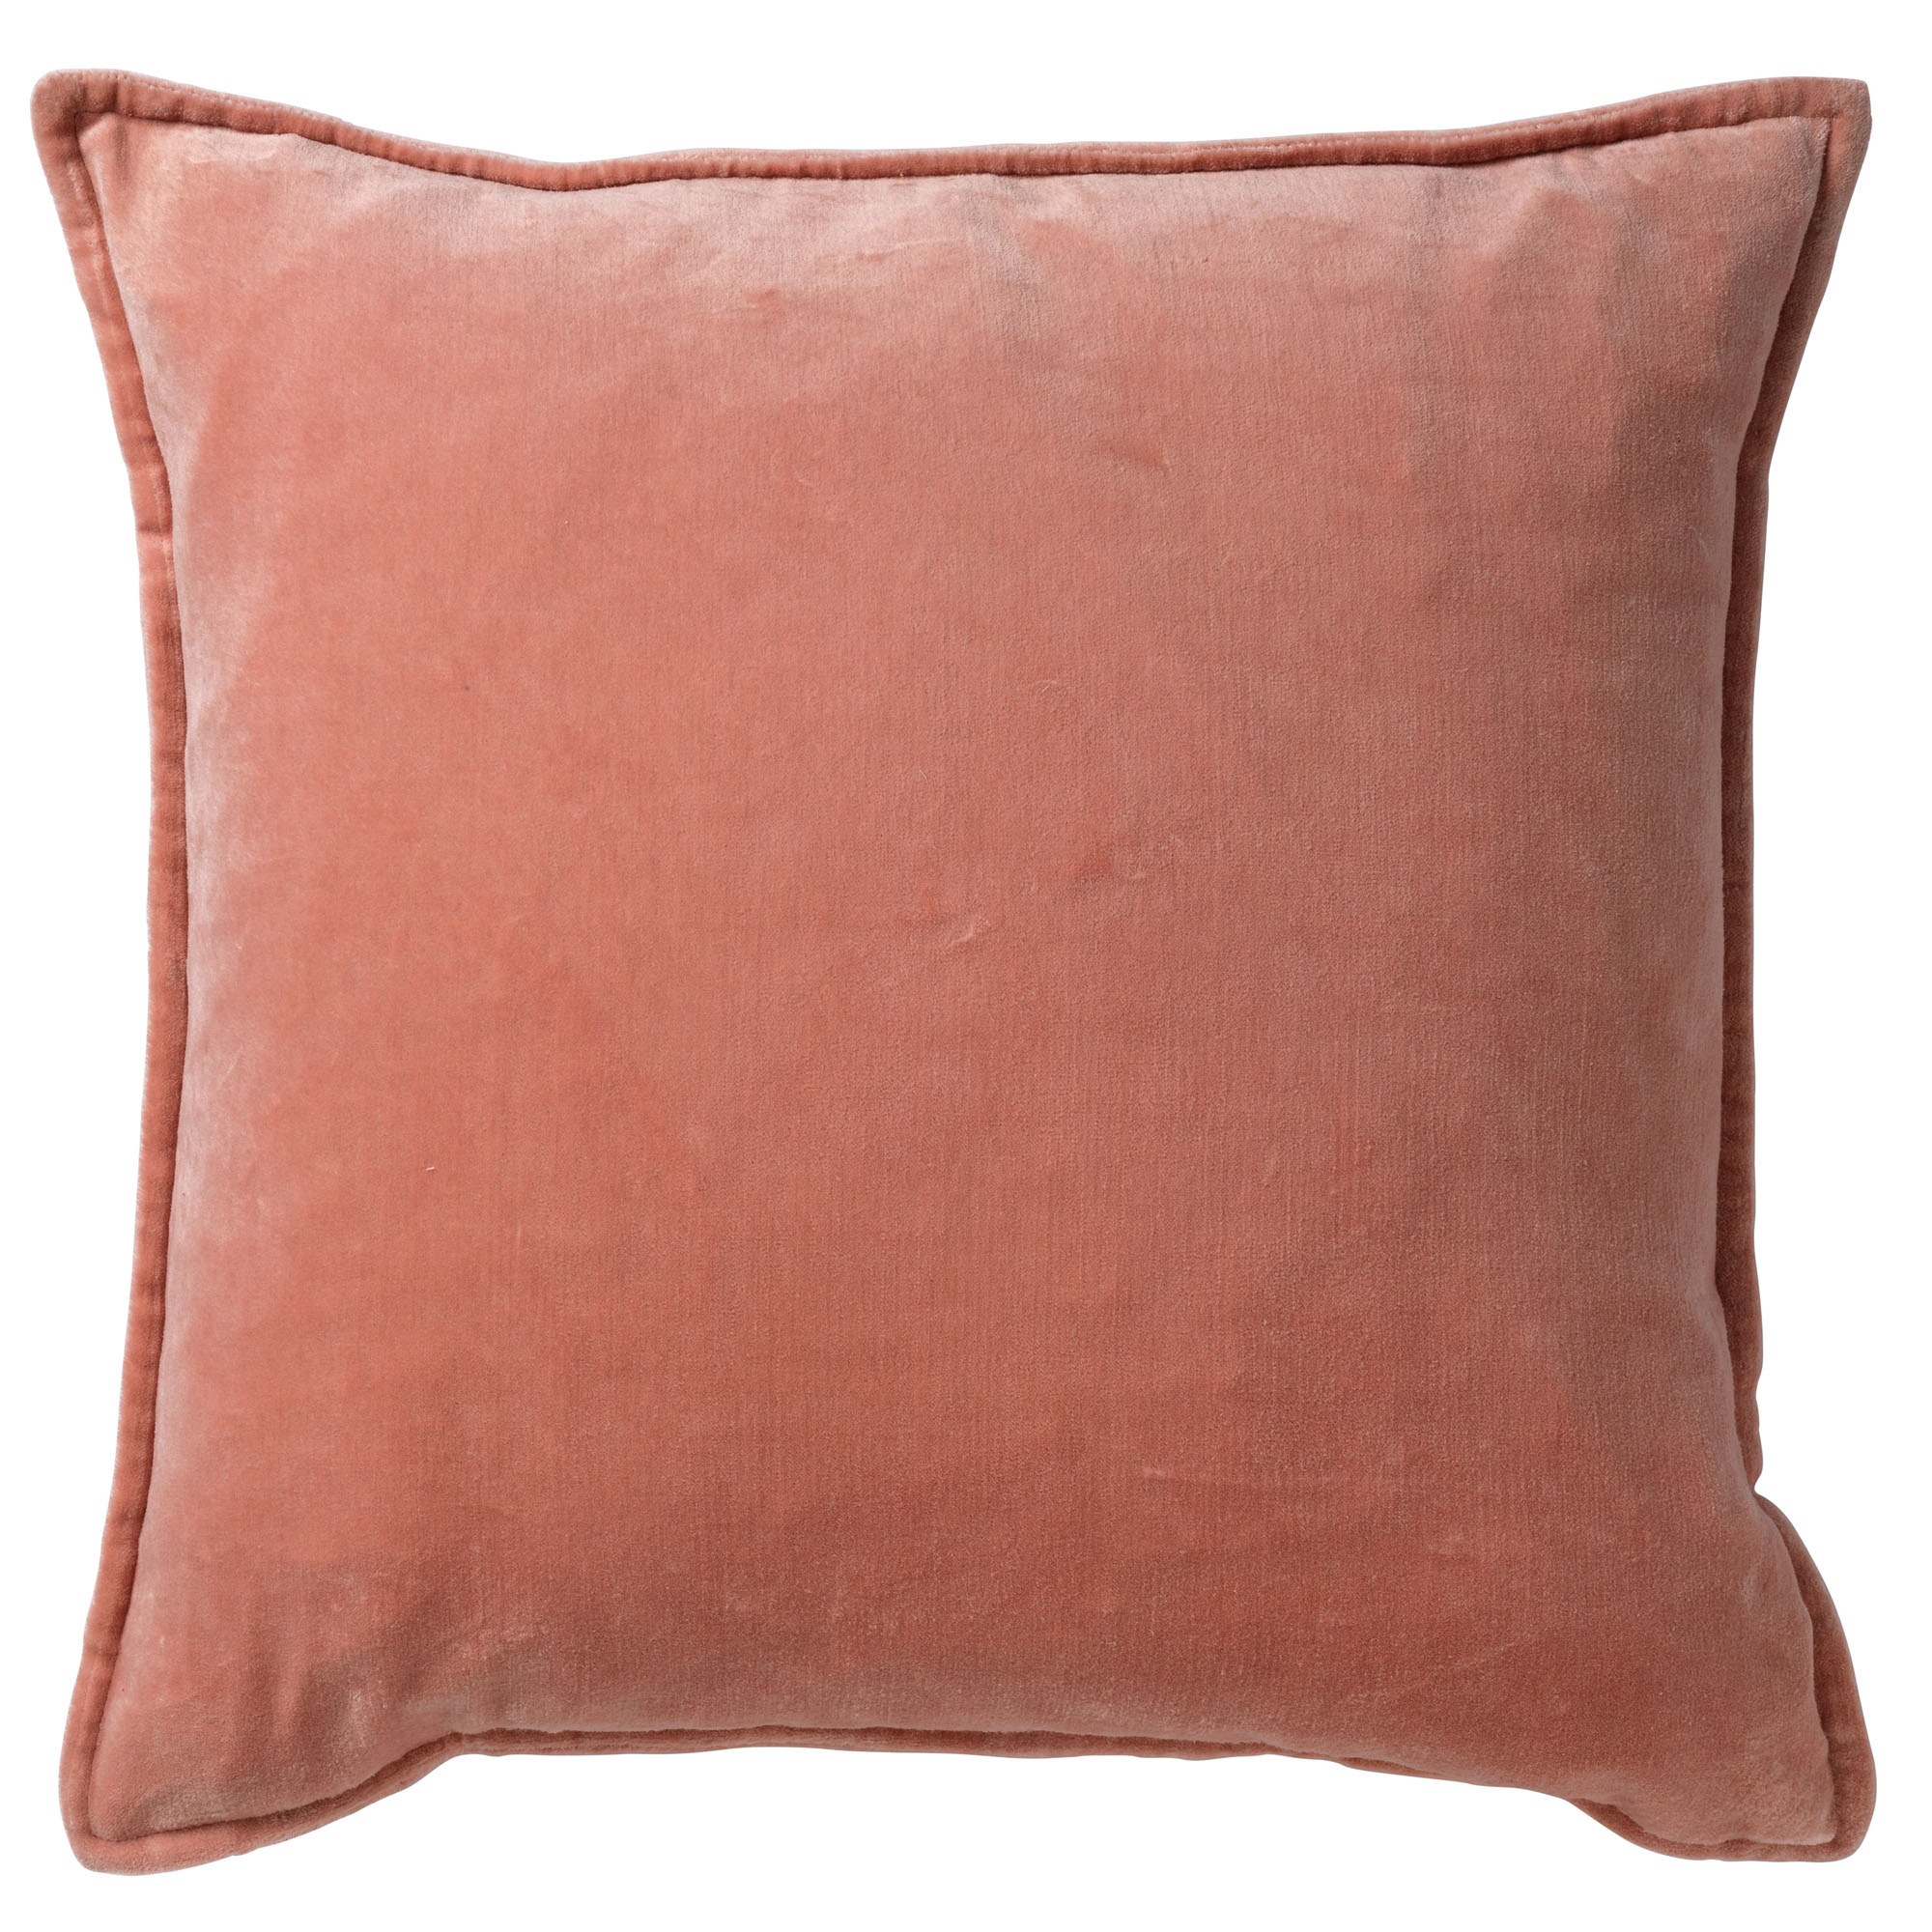 CAITH - Sierkussen 50x50 cm - 100% katoen - velvet - lekker zacht - Muted Clay - roze